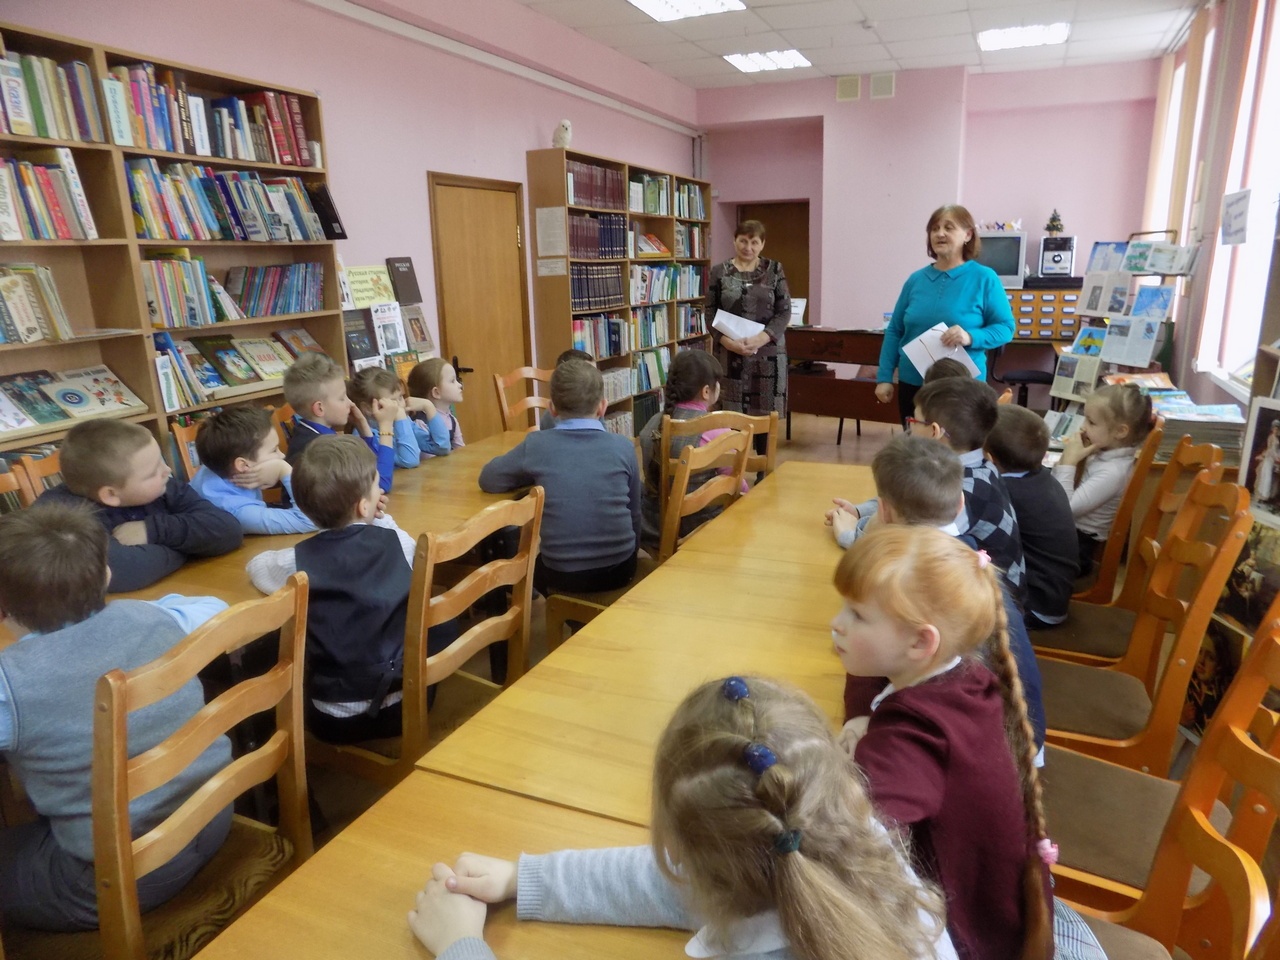 Сайт библиотеки смоленск